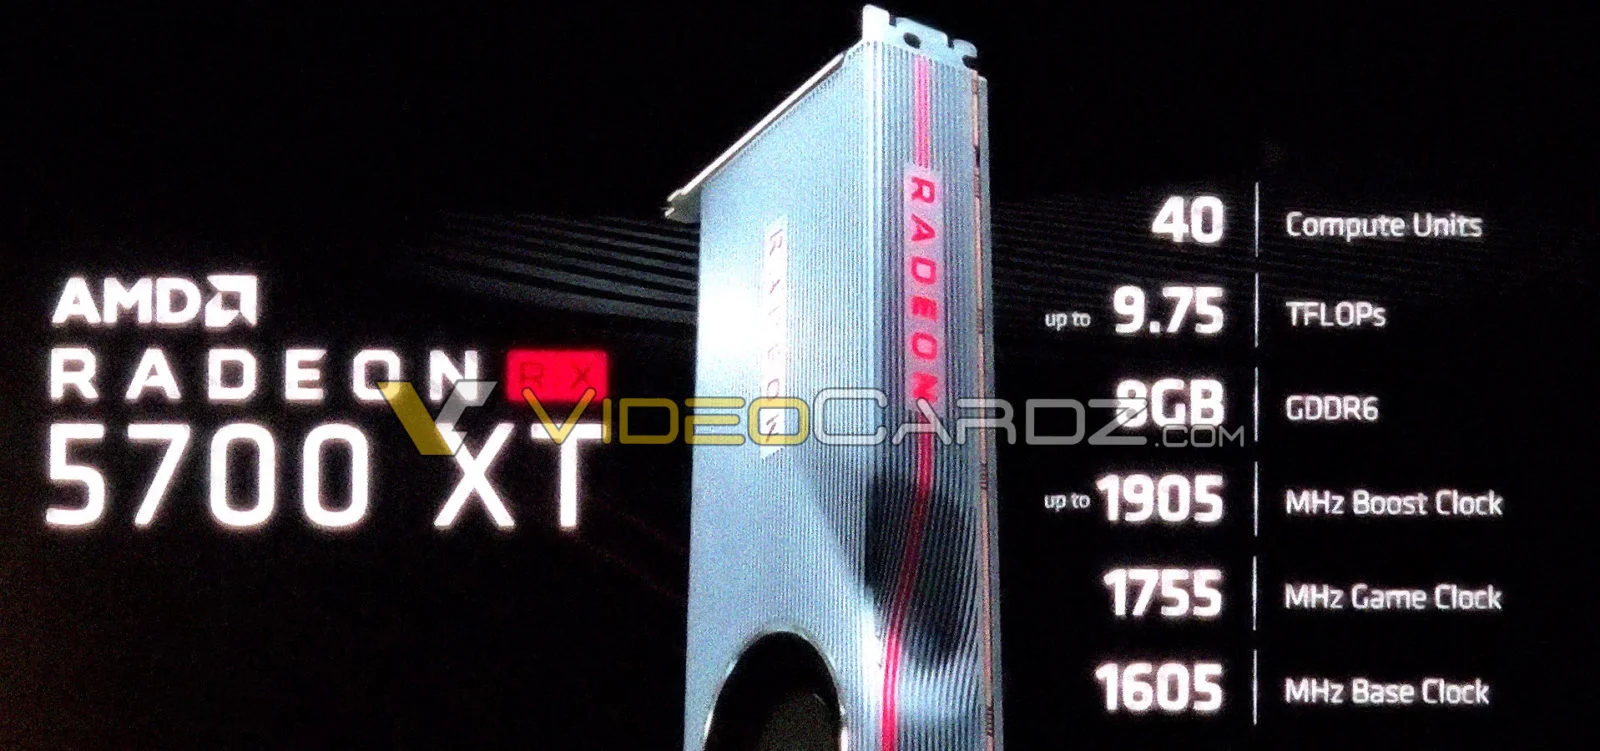 Характеристики видеокарты AMD Radeon RX 5700 XT раскрыты до анонса - фото 2